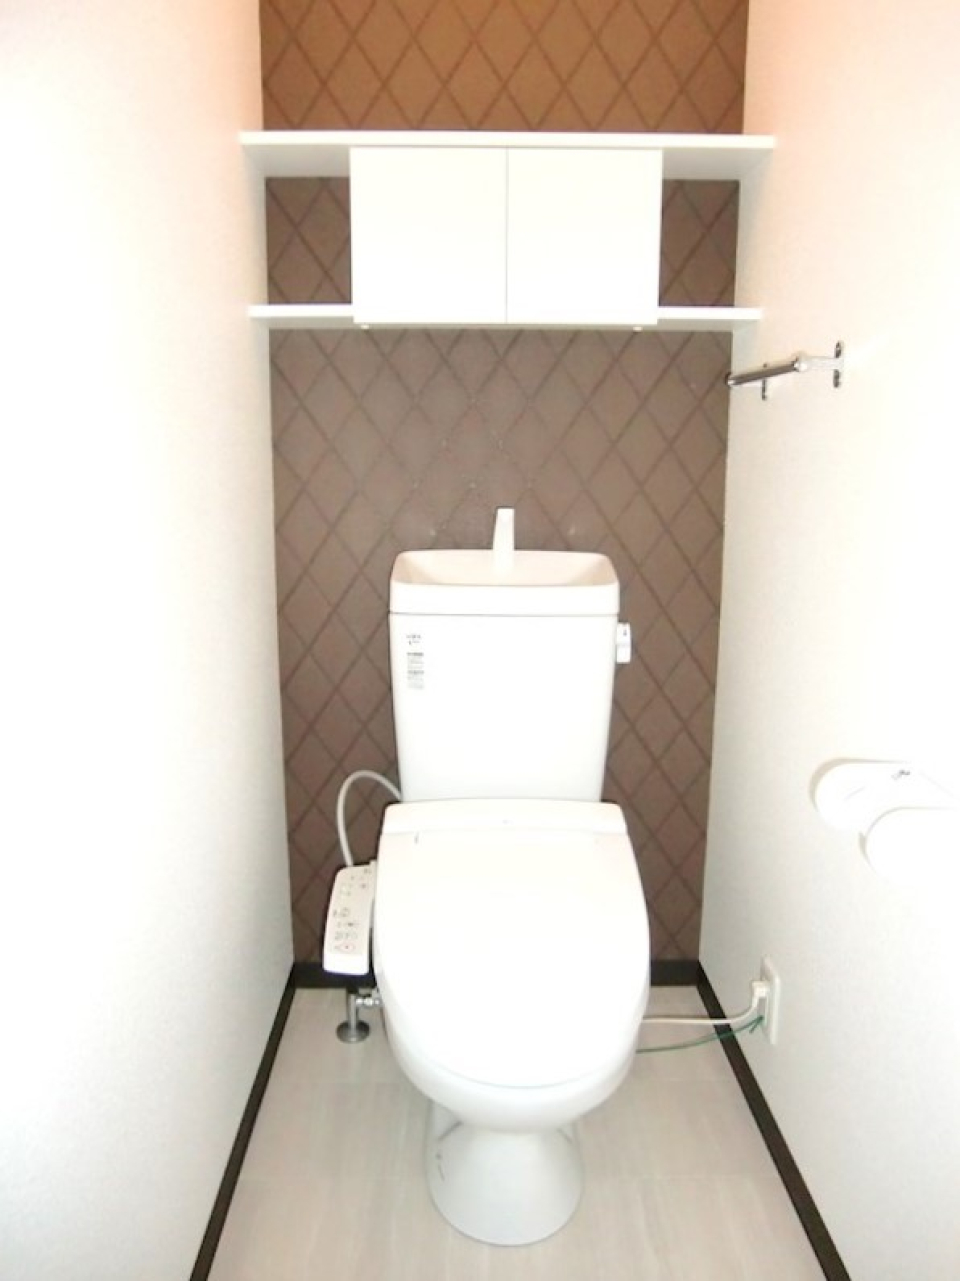 清潔感のあるトイレ。小さくてもモノが隠せるスペースはありがたい